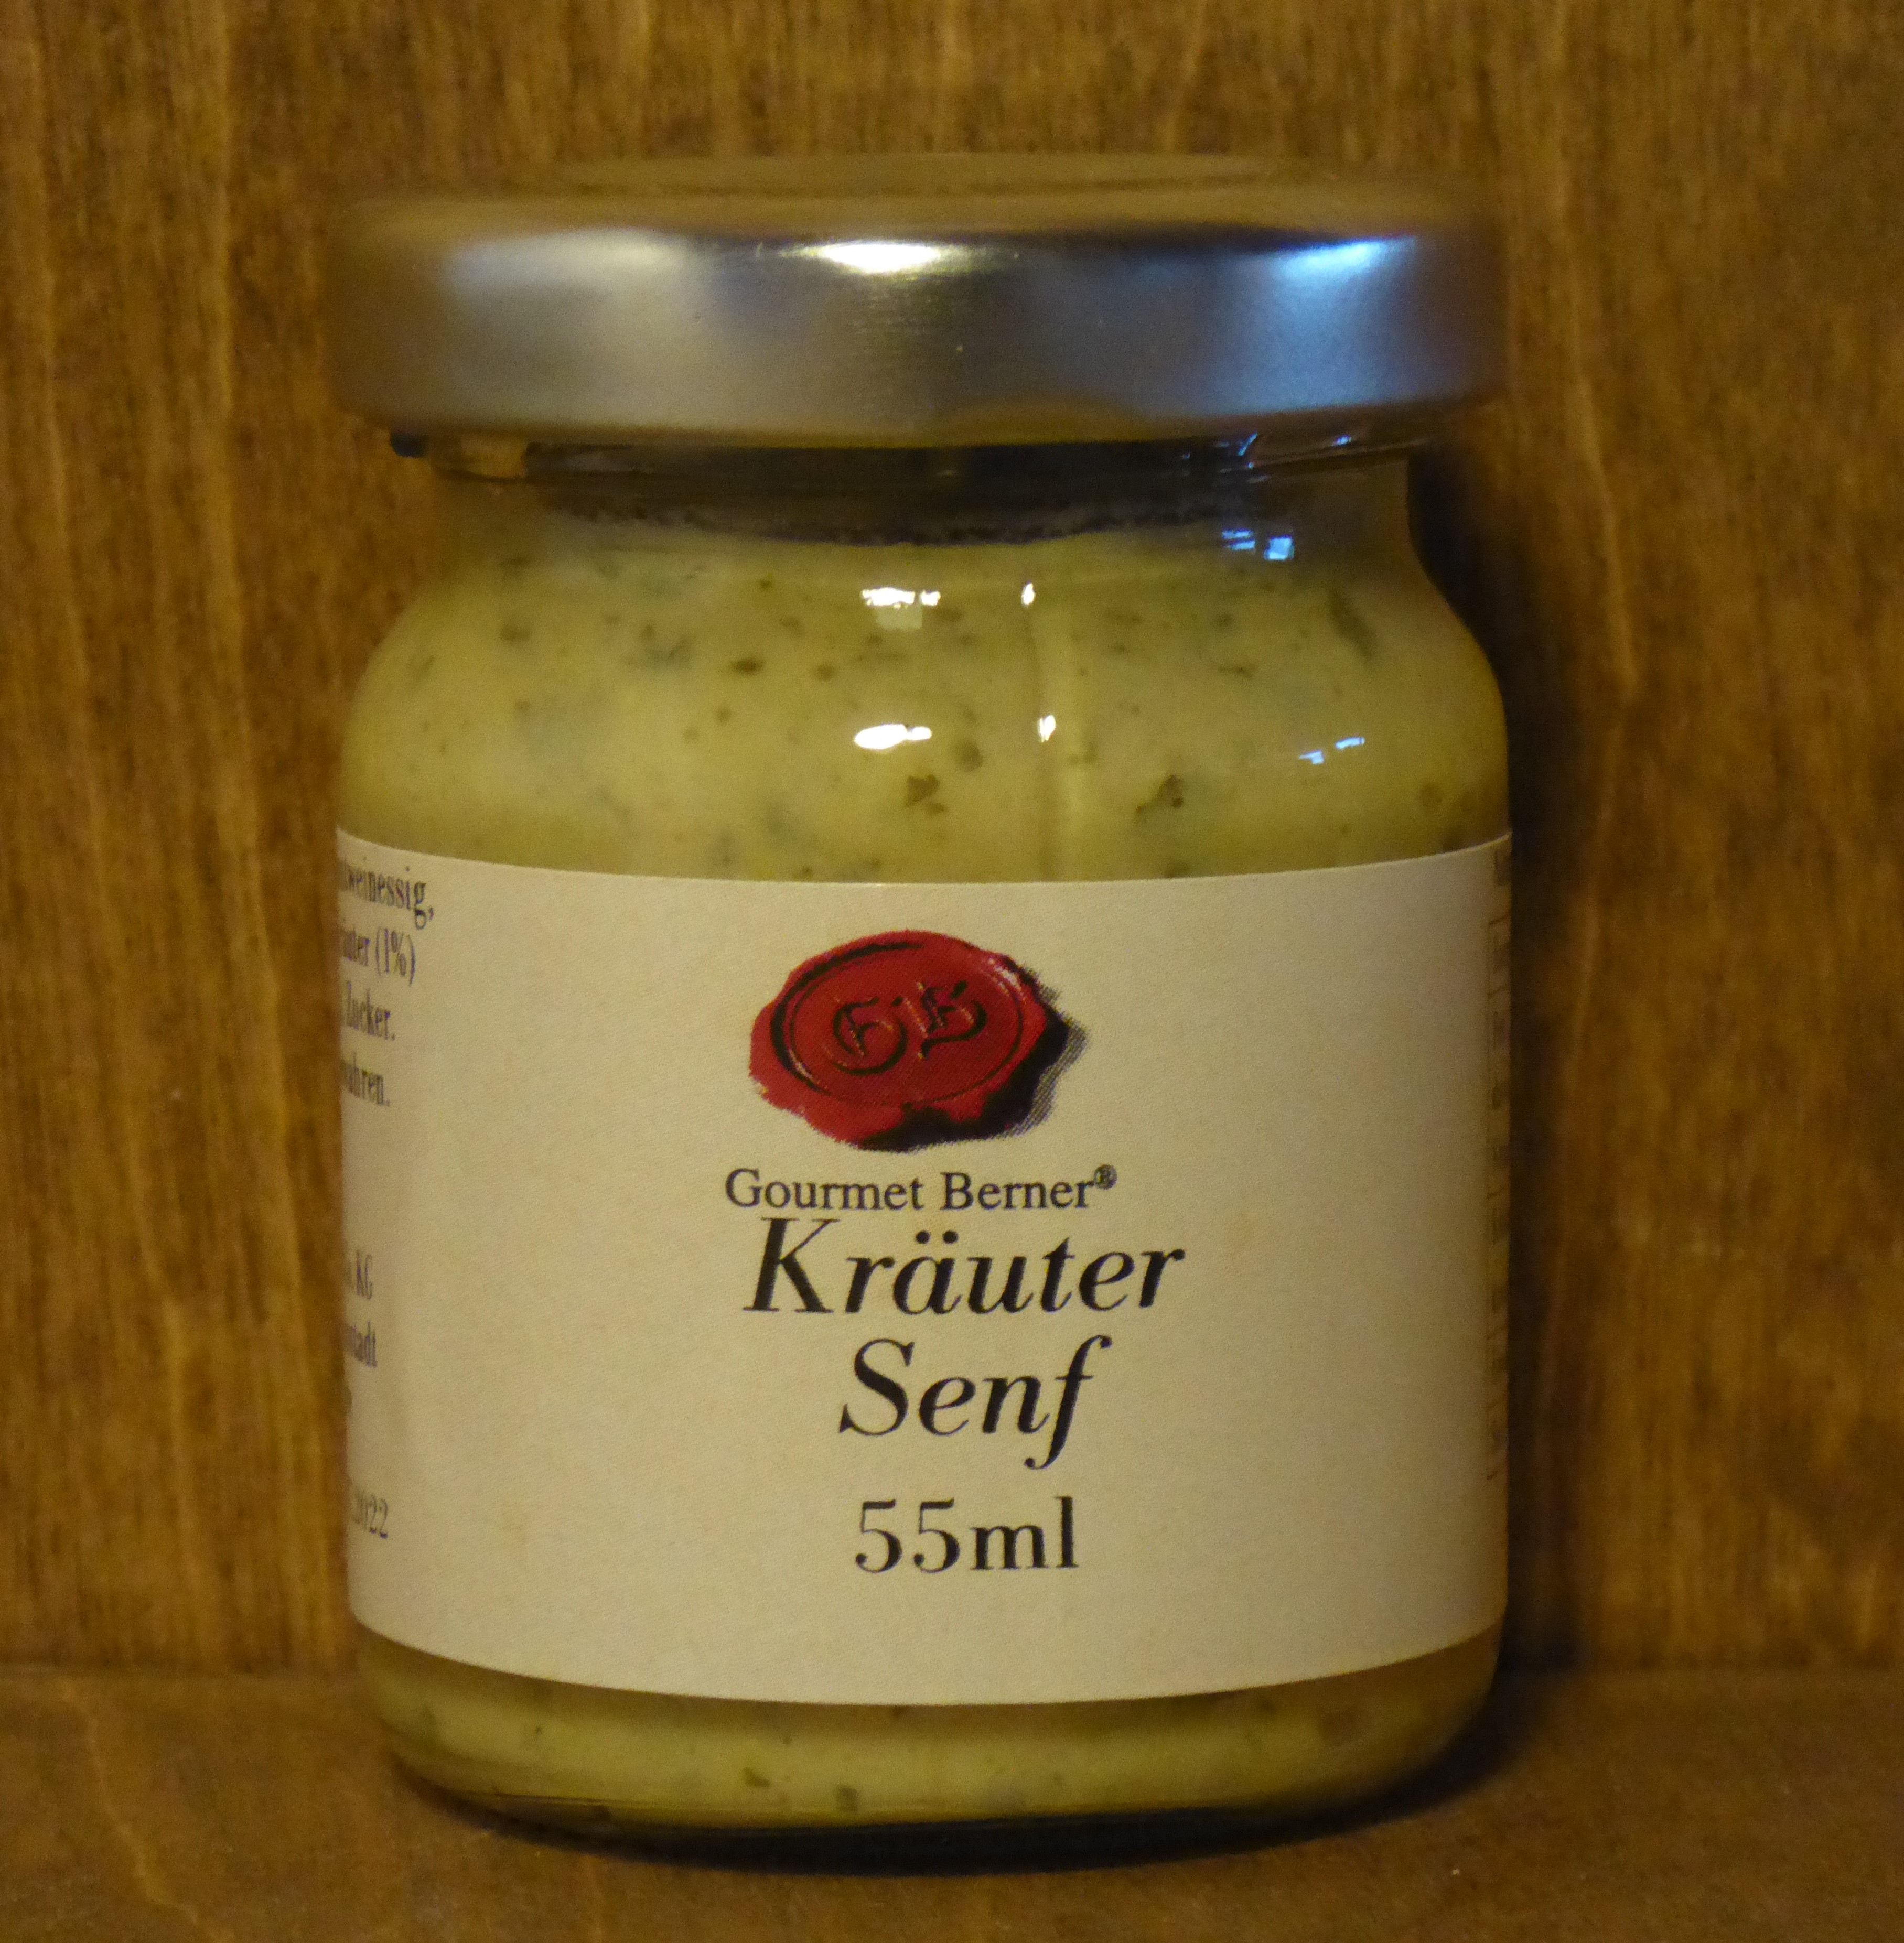 Kräuter Senf, 55ml - Biller Naturmittel